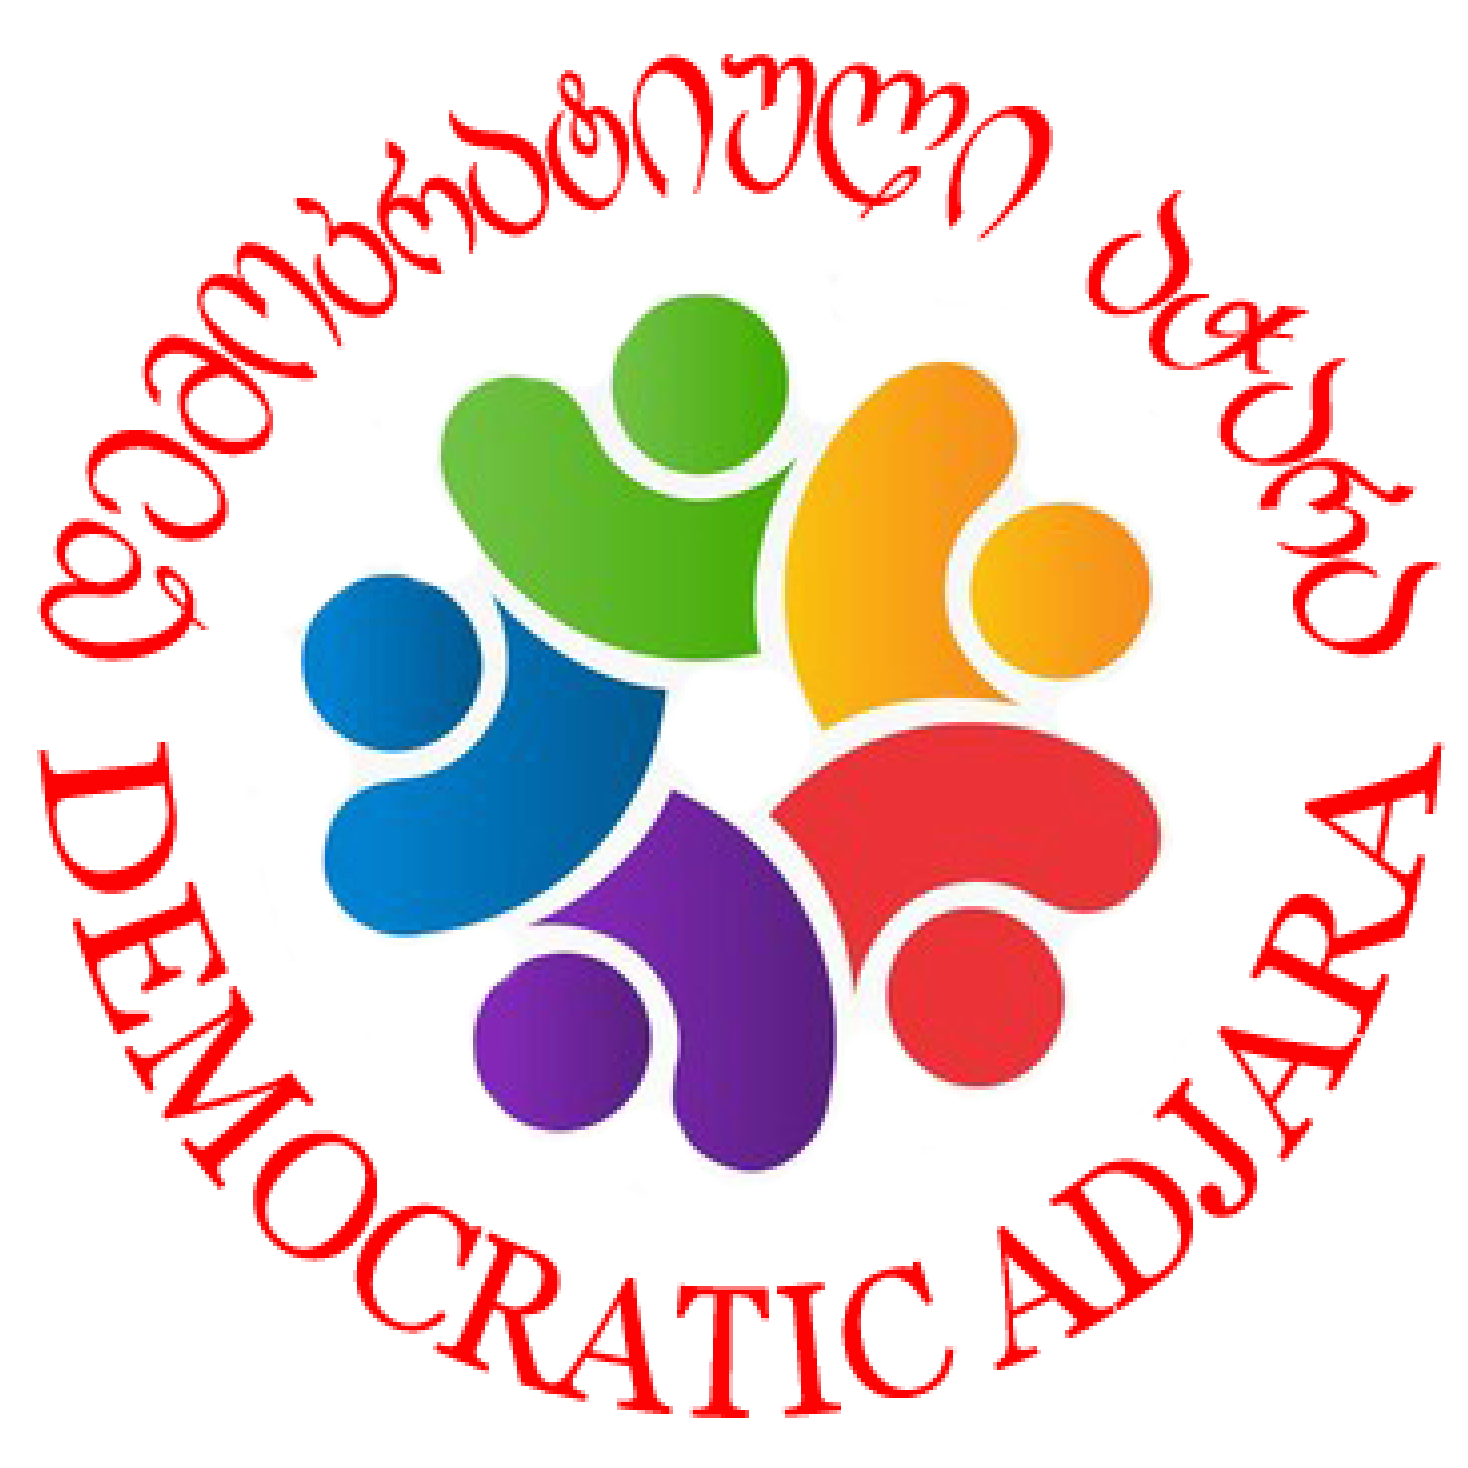 Democratic Adjara